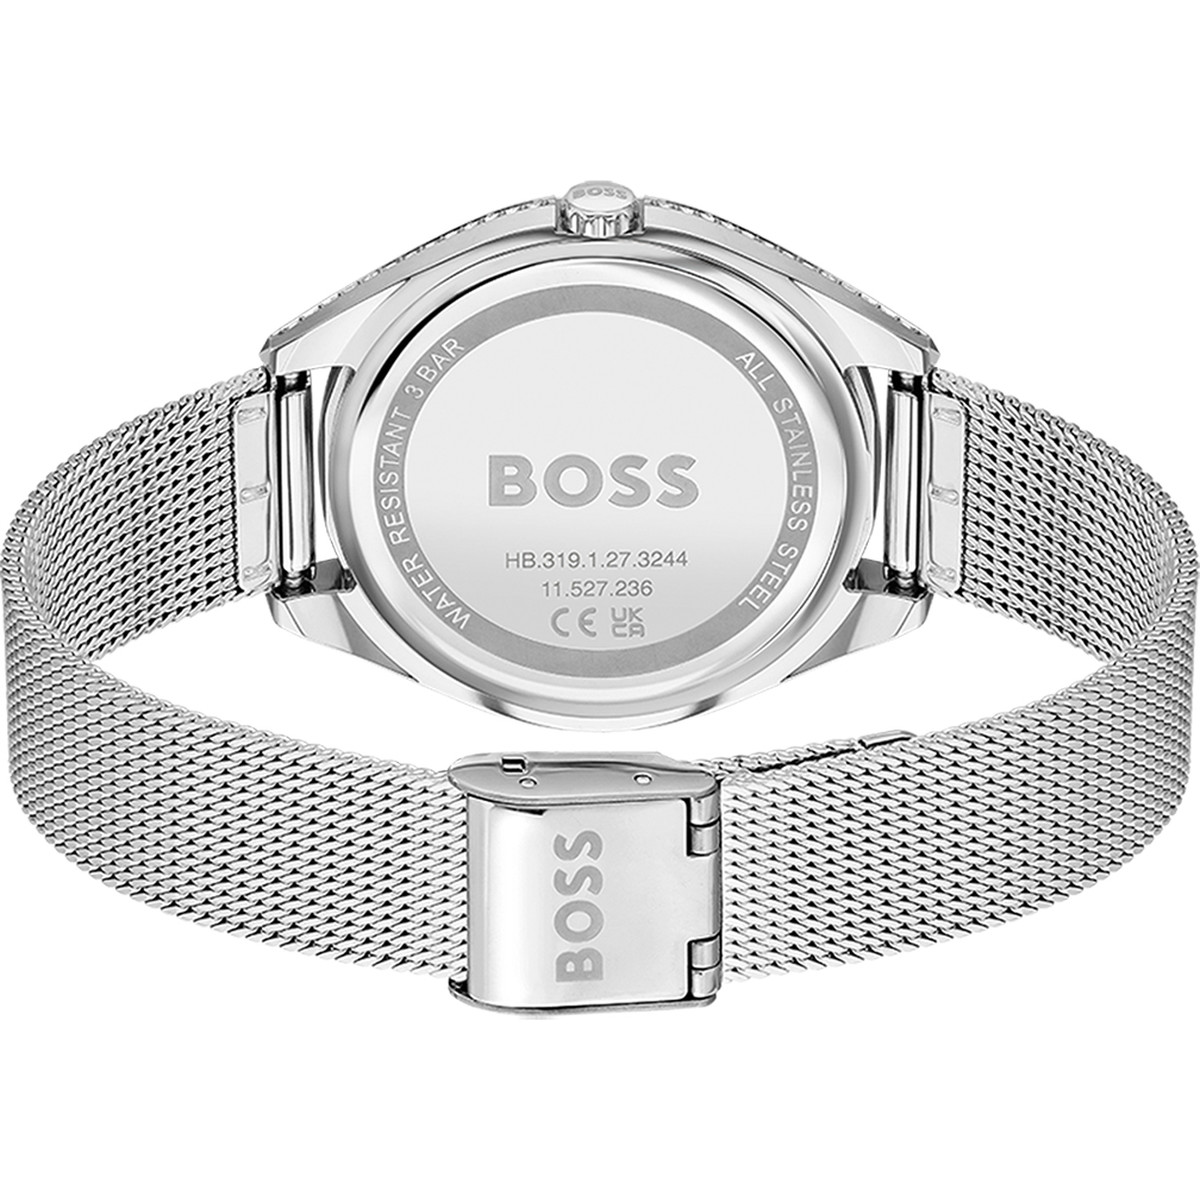 Montre Boss femme bracelet acier argent - vue 3